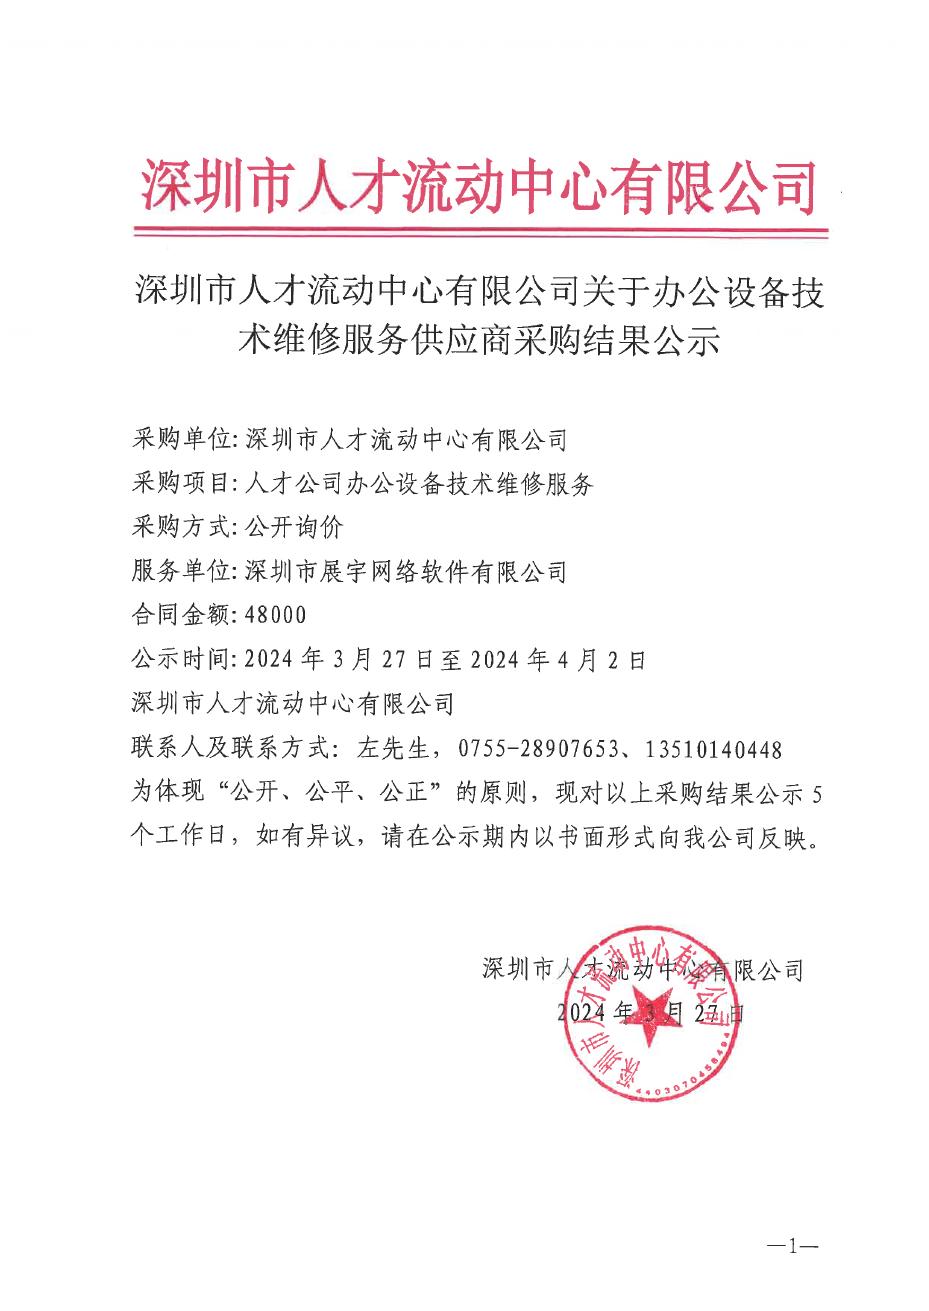 深圳市人才流动中心有限公司办公设备技术维修服务供应商公示